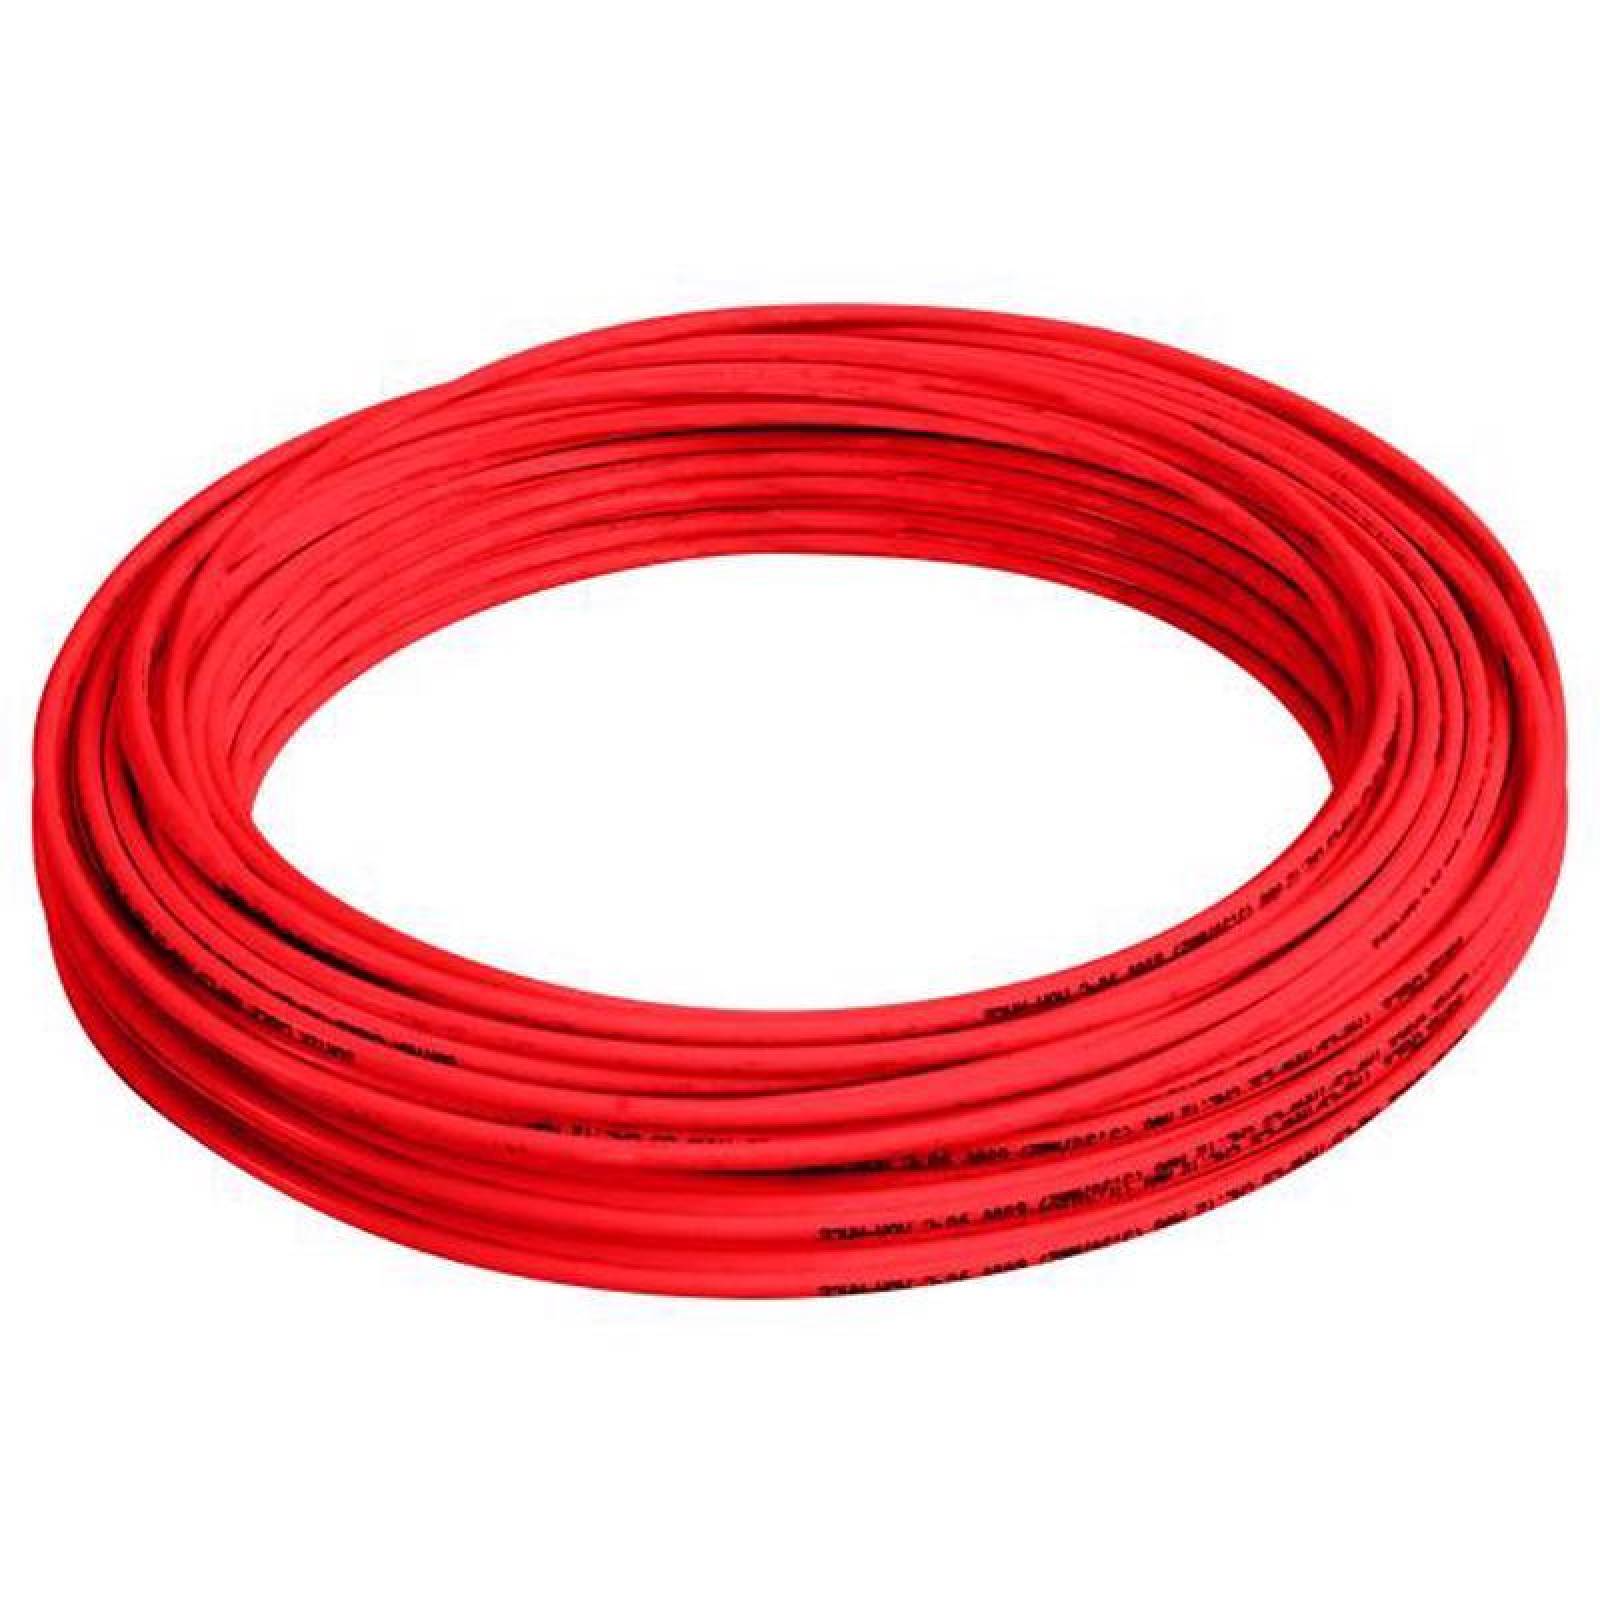 Cable eléctrico tipo THW-LS/THHW-LS Cal.14 100mt rojo - Codigo: 136923 - Marca: Surtek 